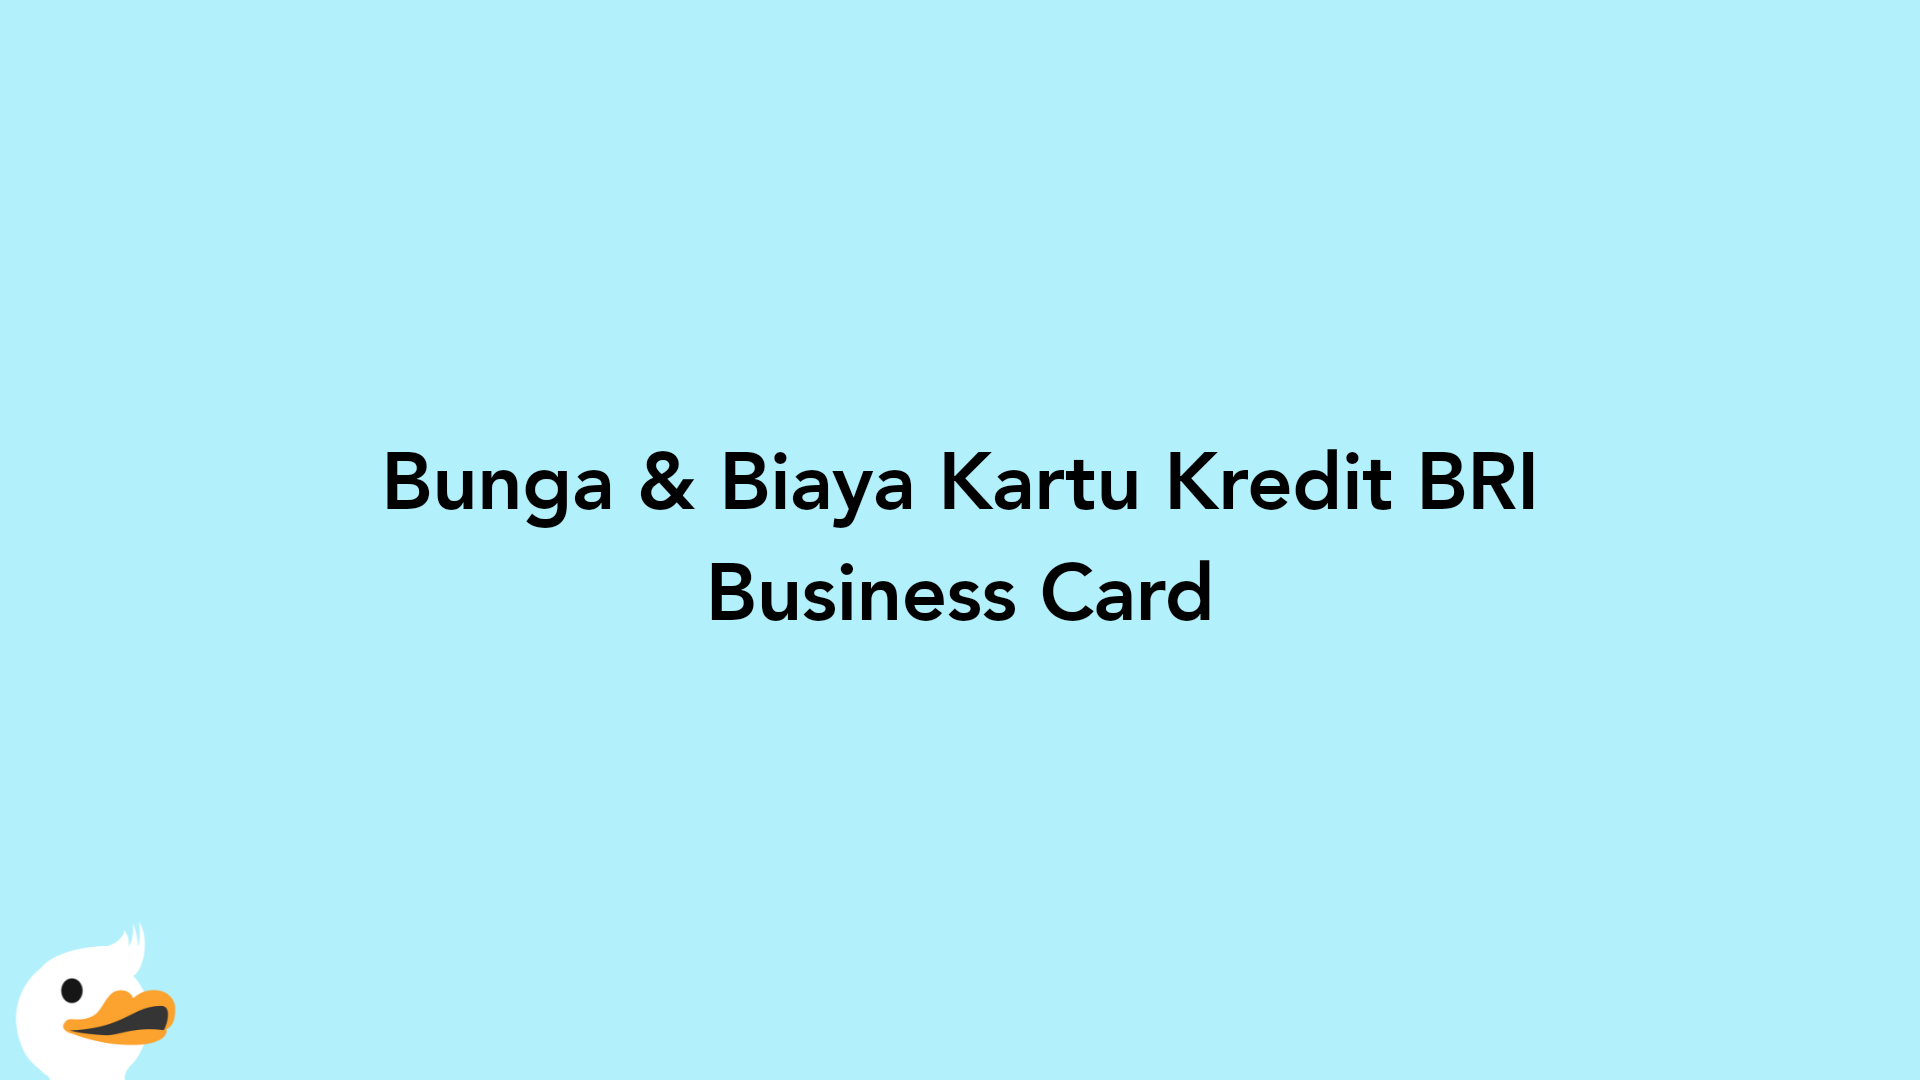 Bunga & Biaya Kartu Kredit BRI Business Card